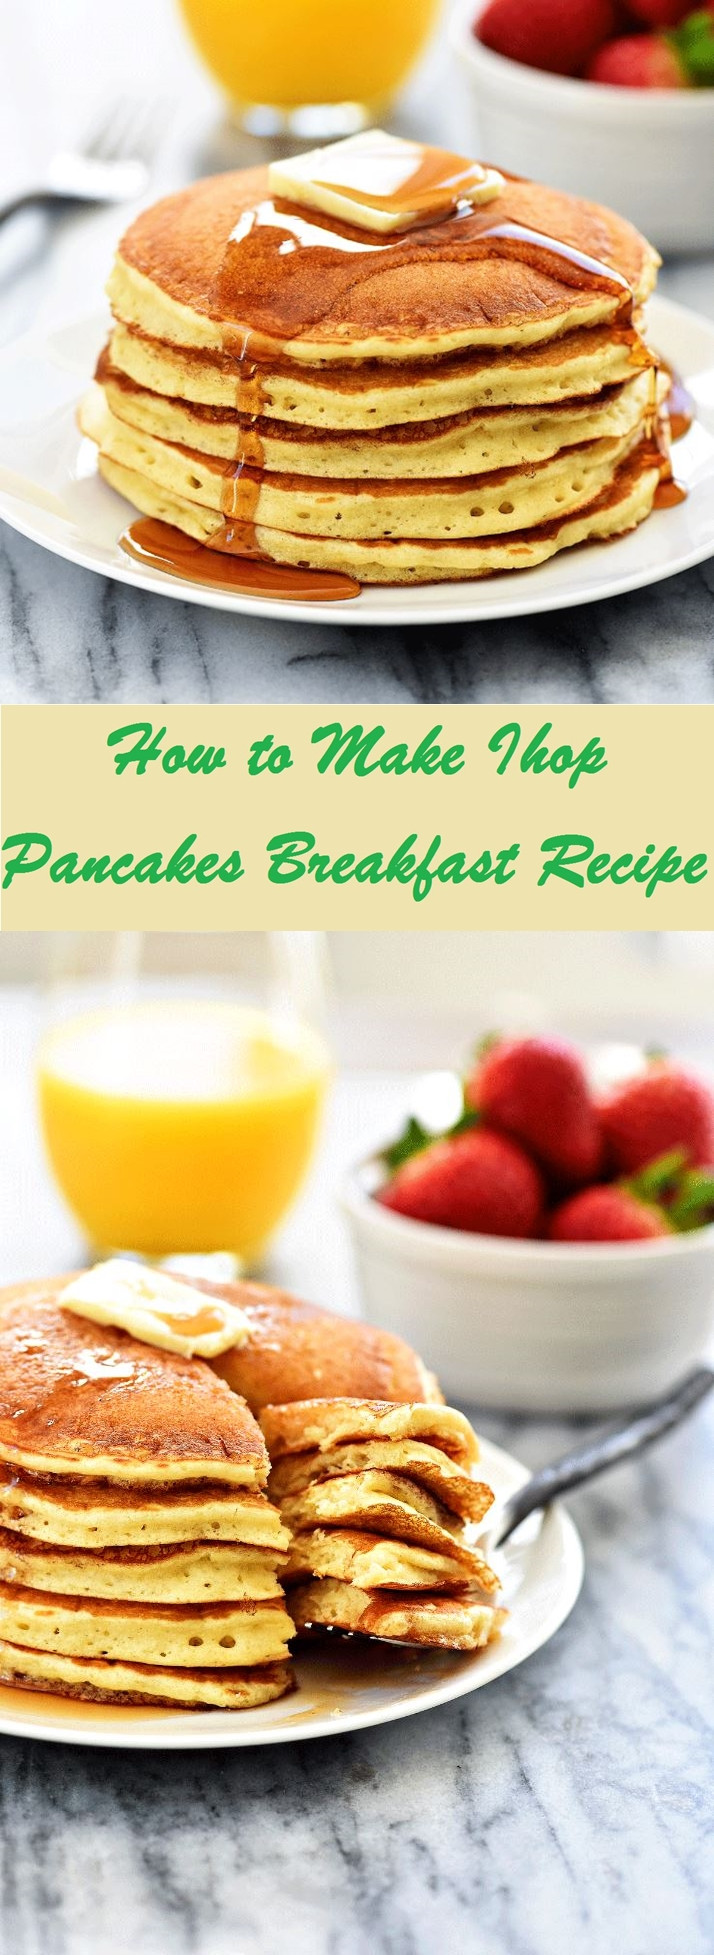 Ihop Healthy Breakfast
 Ihop Breakfast Recipes